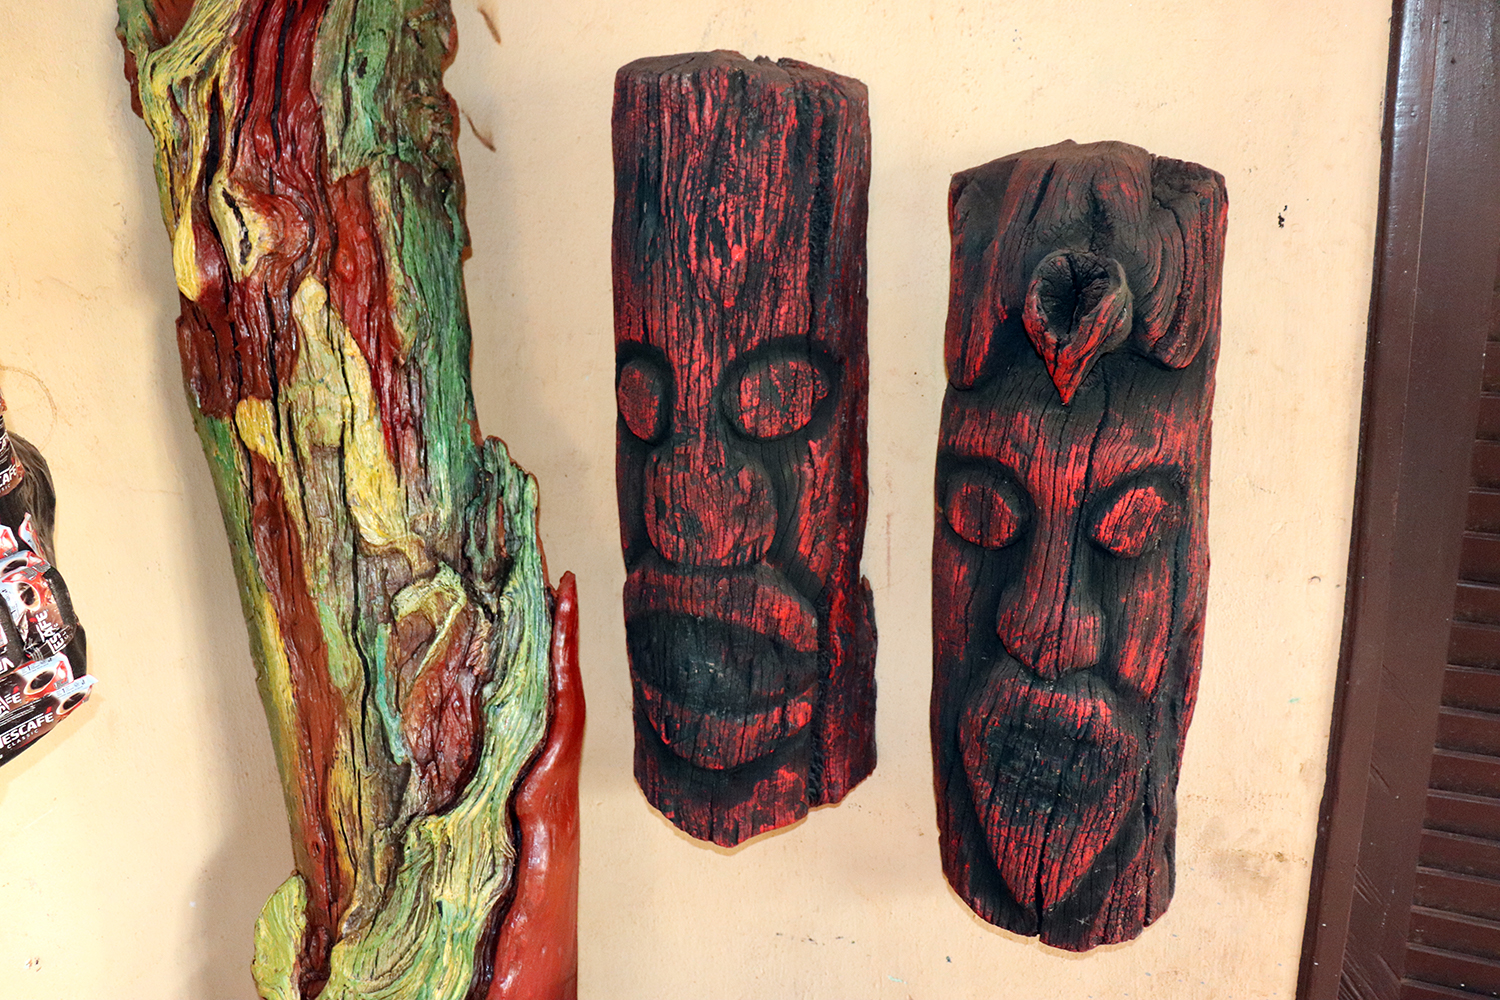 Julien DEGAN sculpte des masques sur des écorces d’arbre en s’inspirant des masques sacrés.  